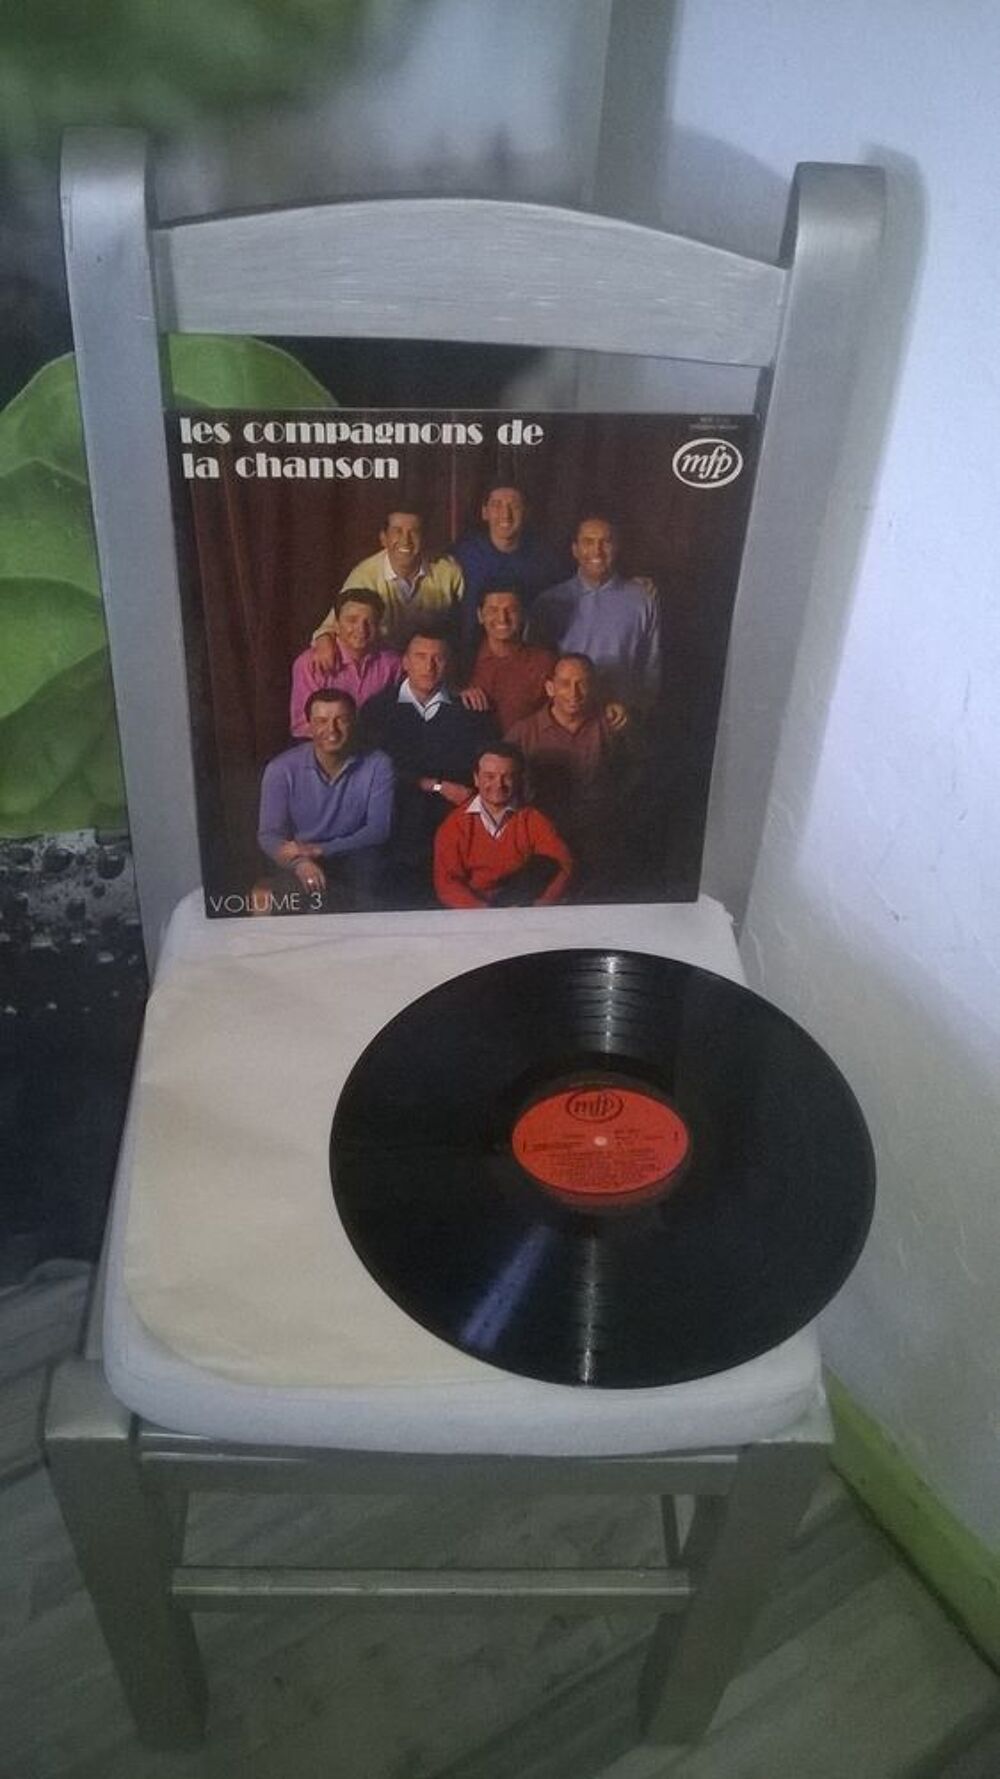 Vinyle Les Compagnons De La Chanson
Volume 3
1973
Excelle CD et vinyles